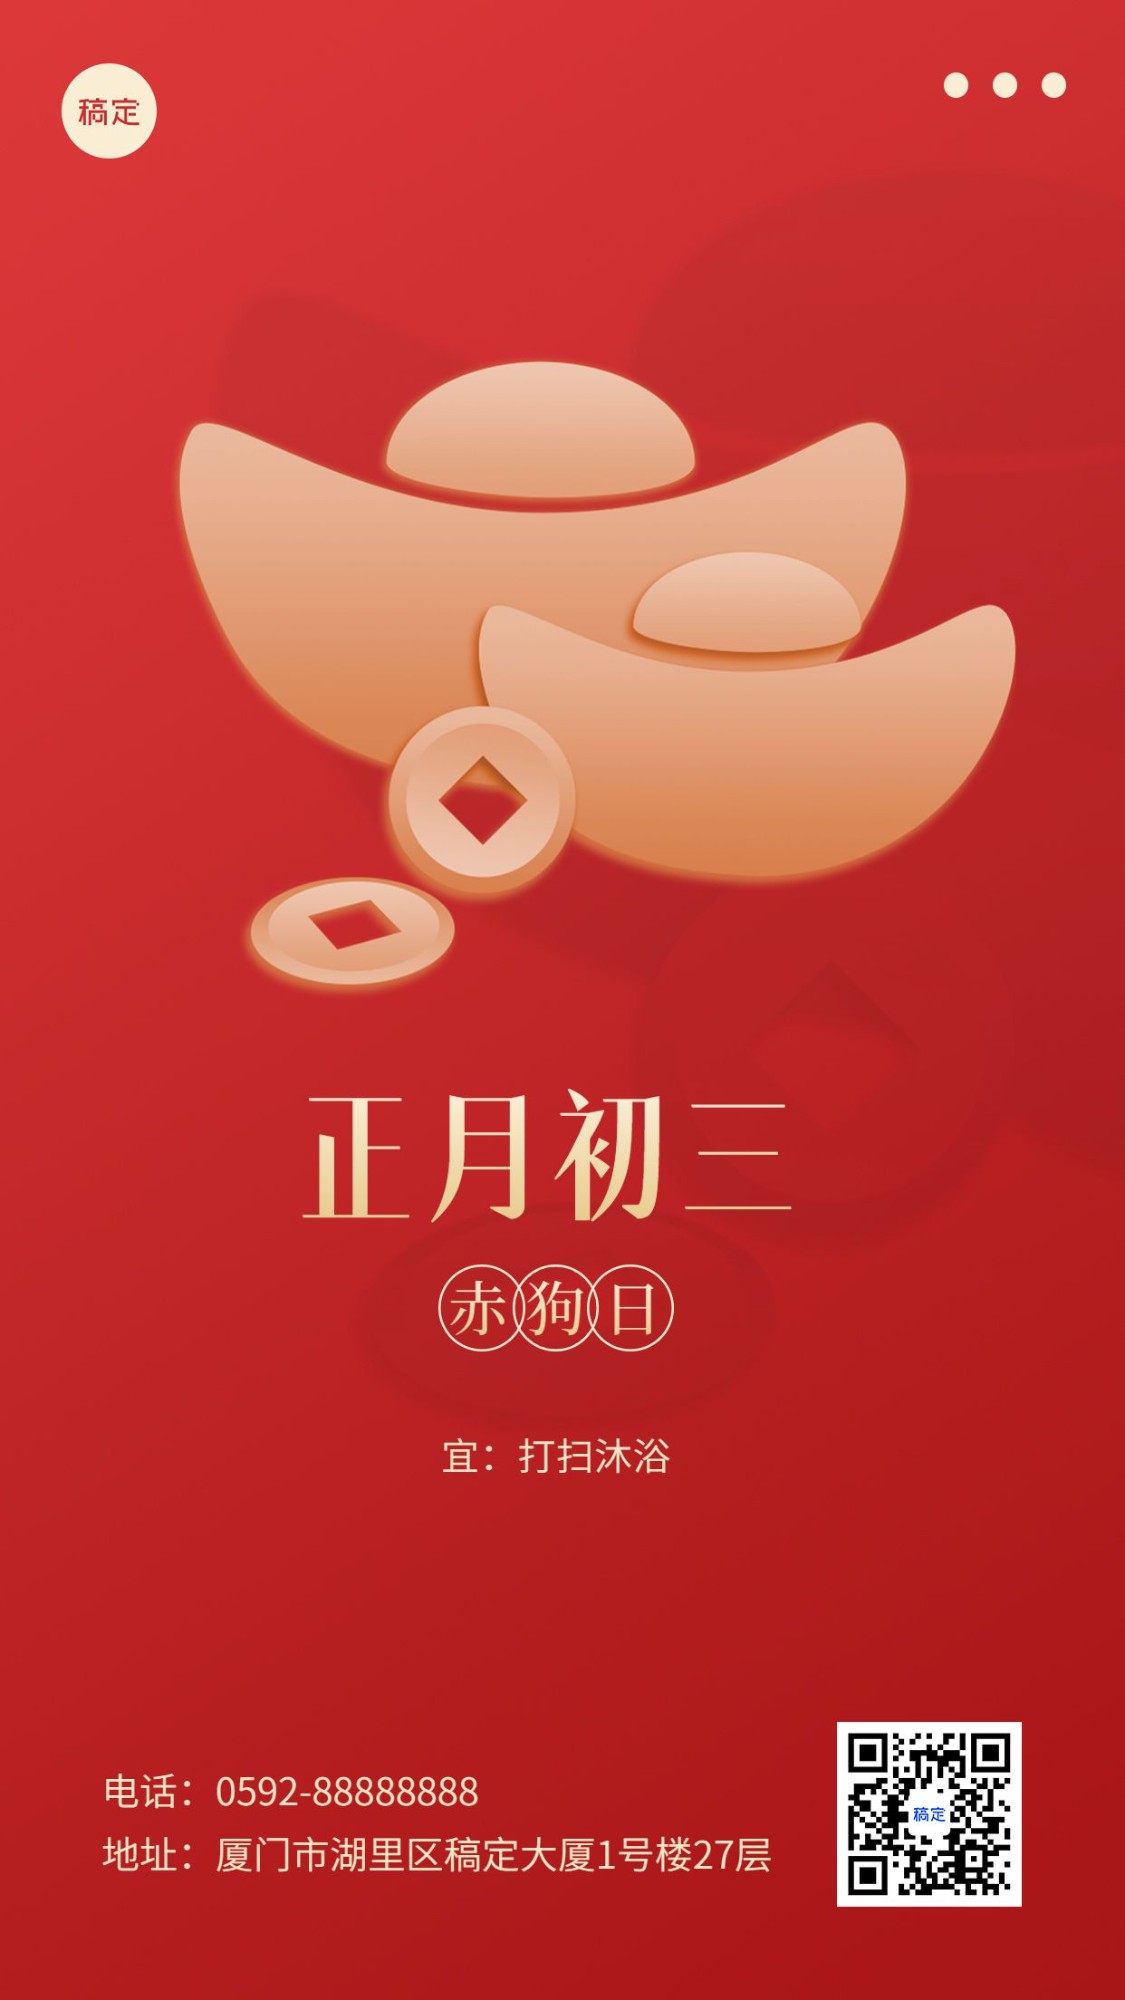 春节新年祝福正月初三简约排版套系手机海报预览效果